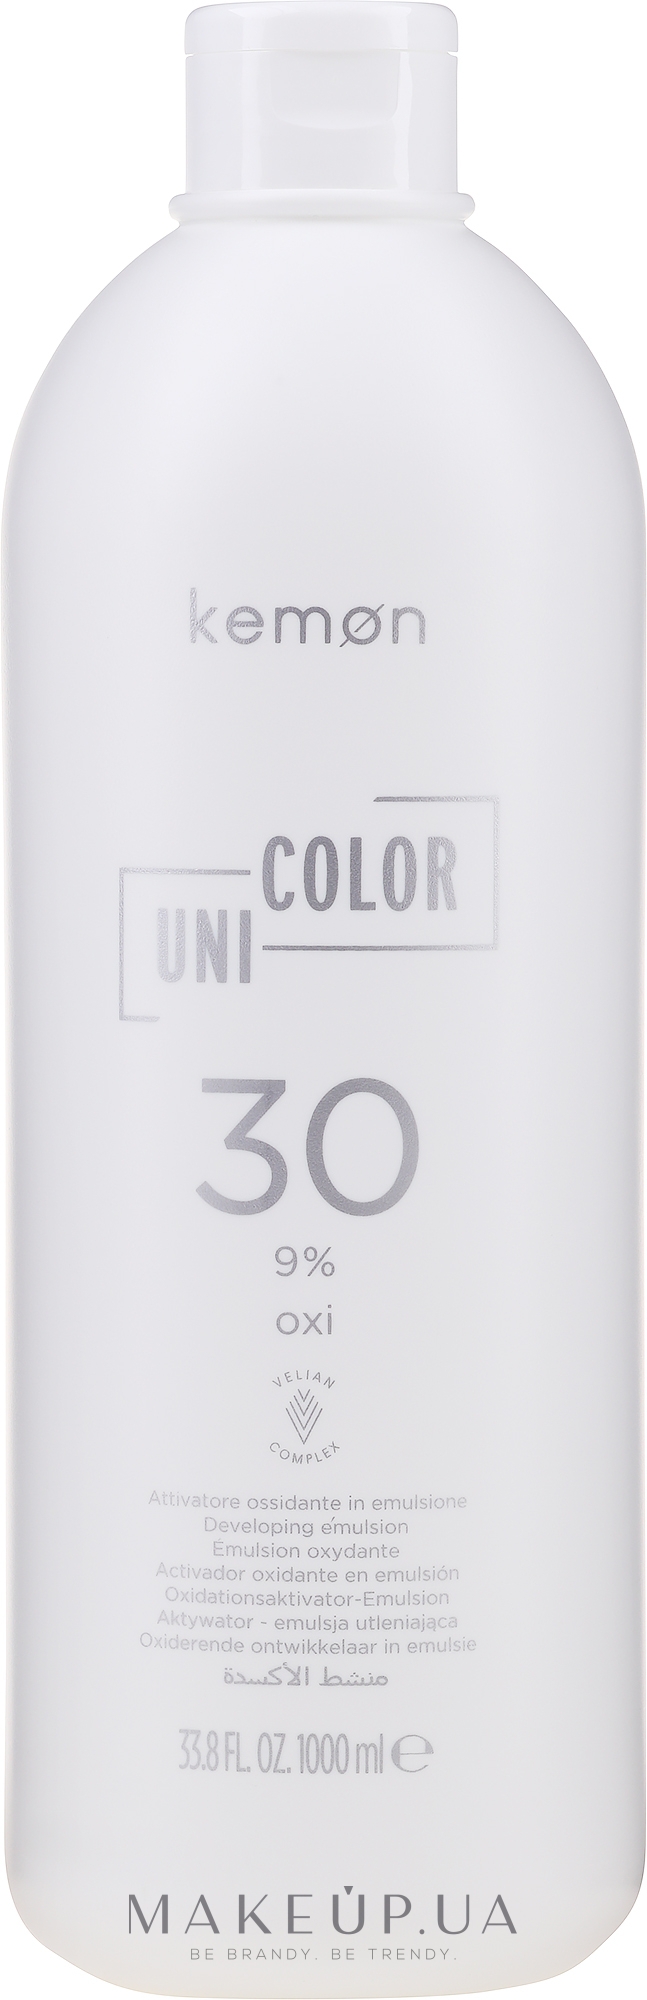 Окислювач універсальний для фарби 9% - Kemon Uni.Color Oxi — фото 1000ml